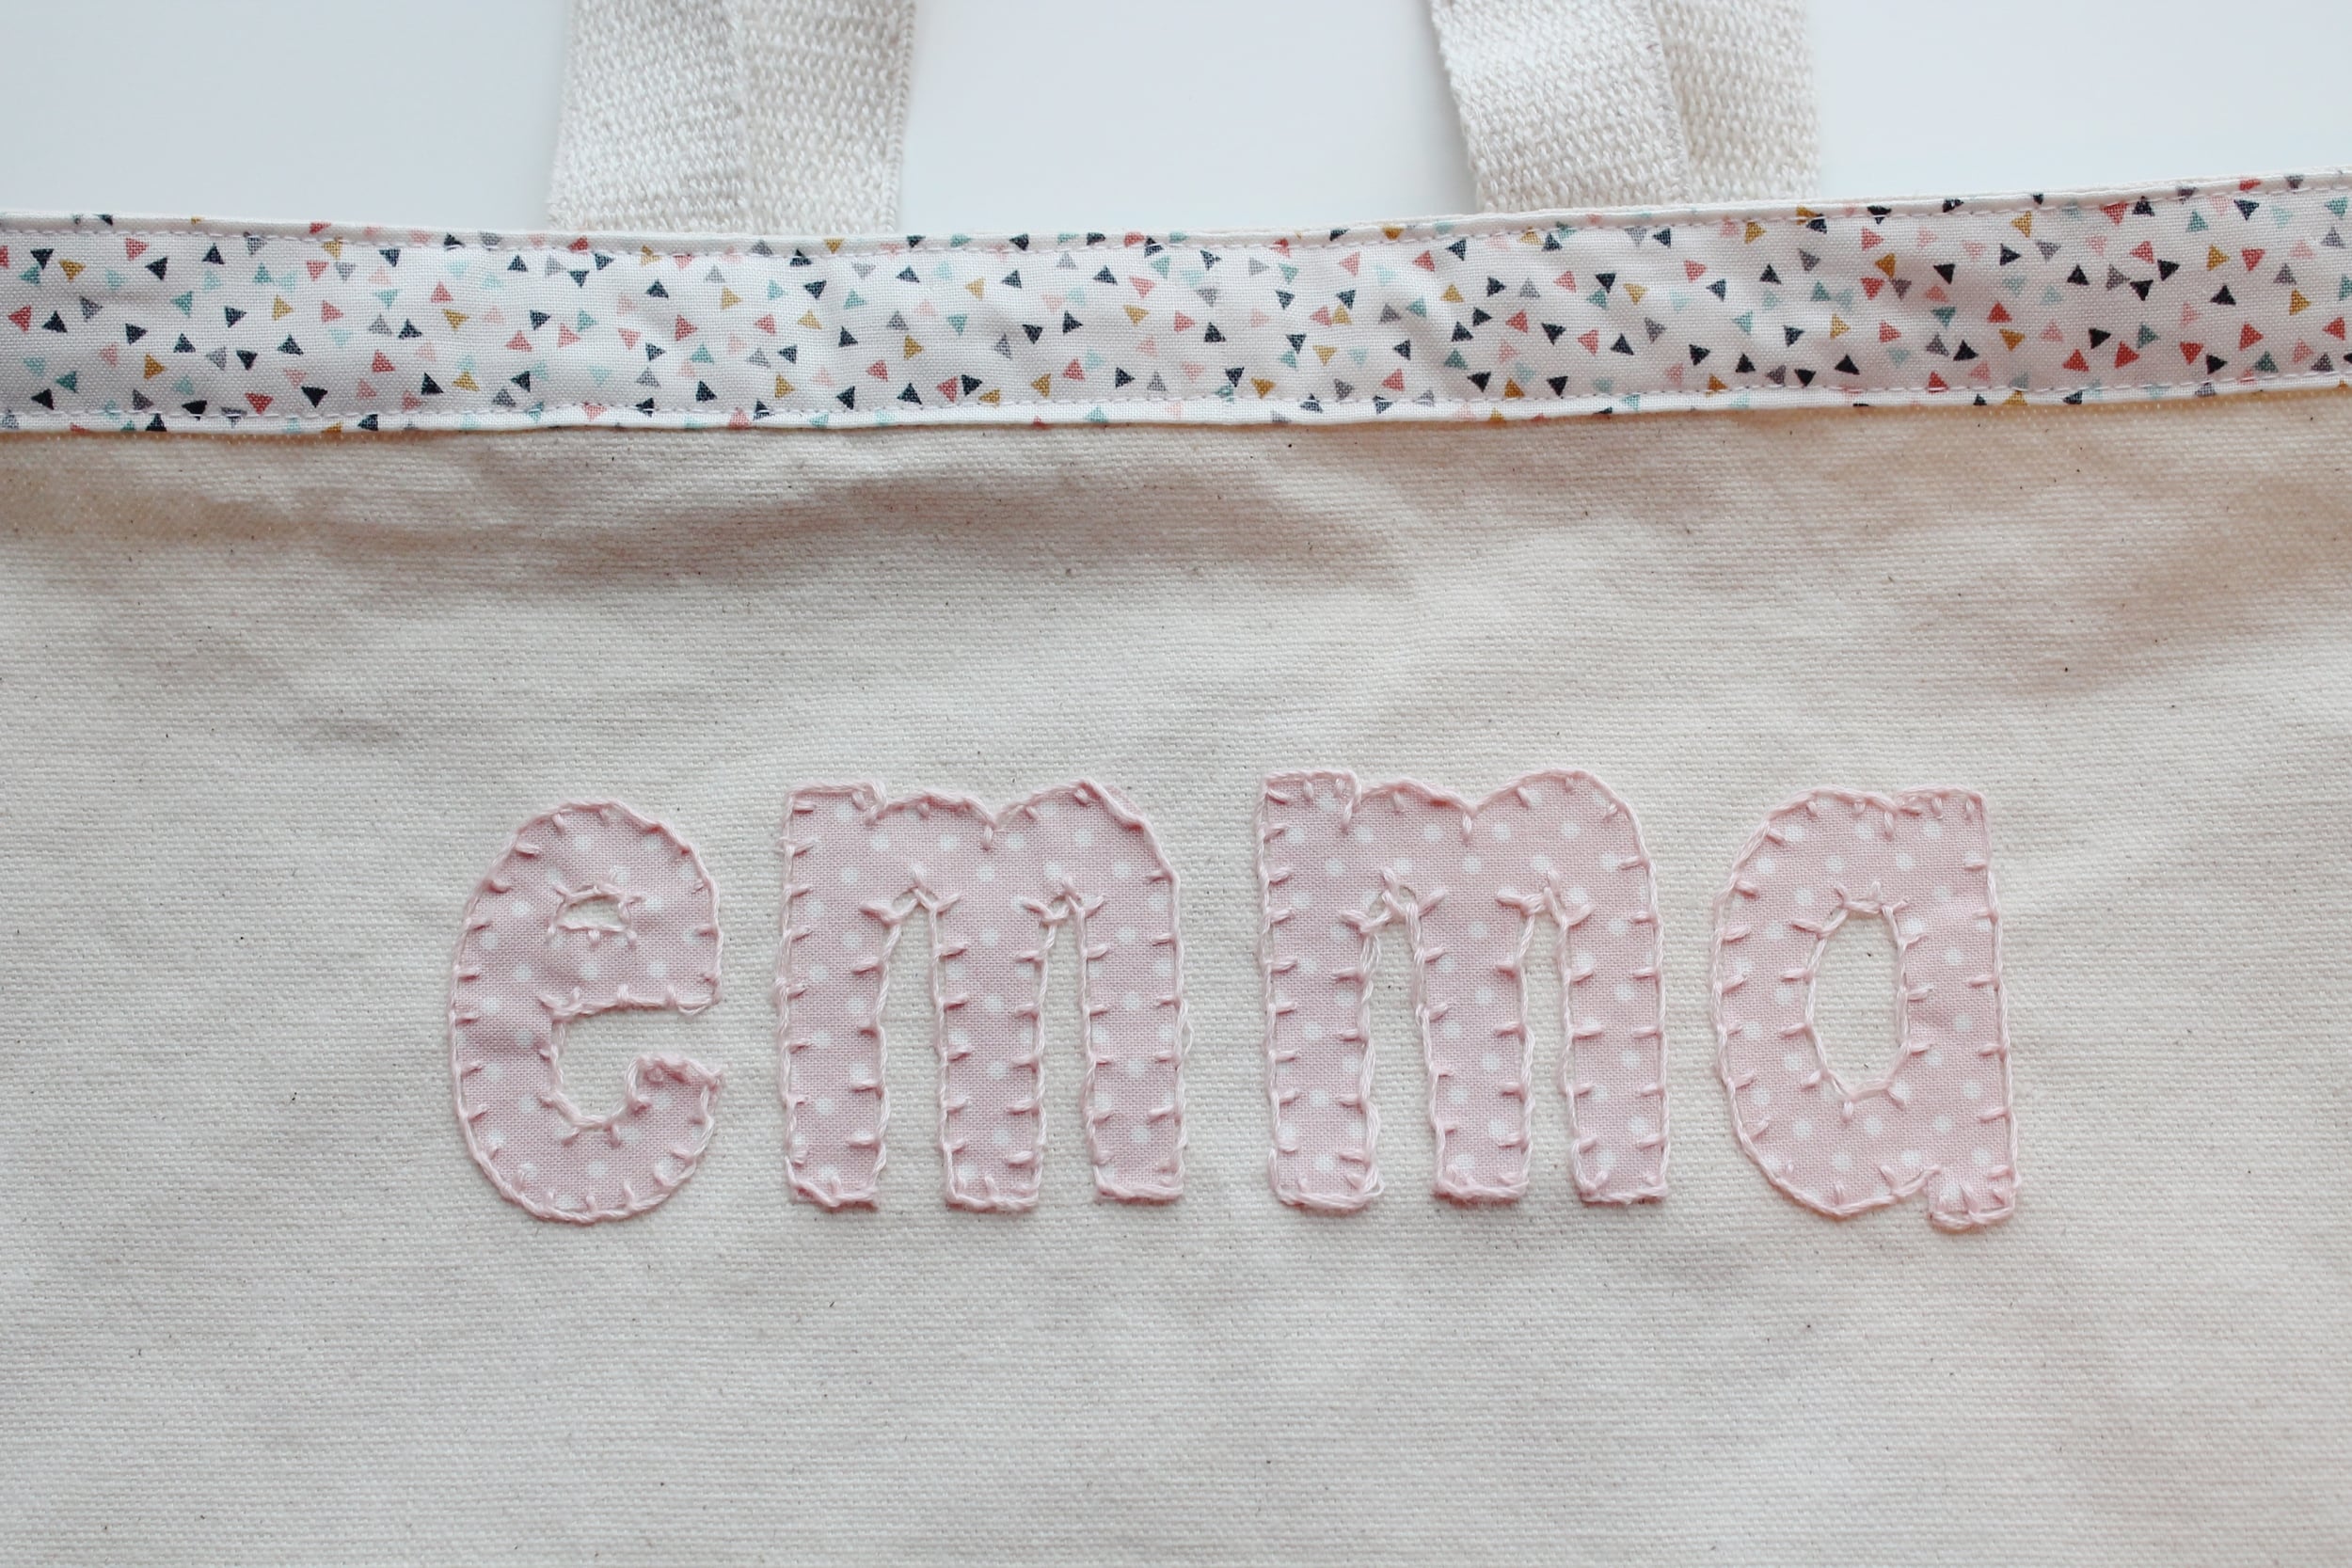 blanket stitch around applique letters